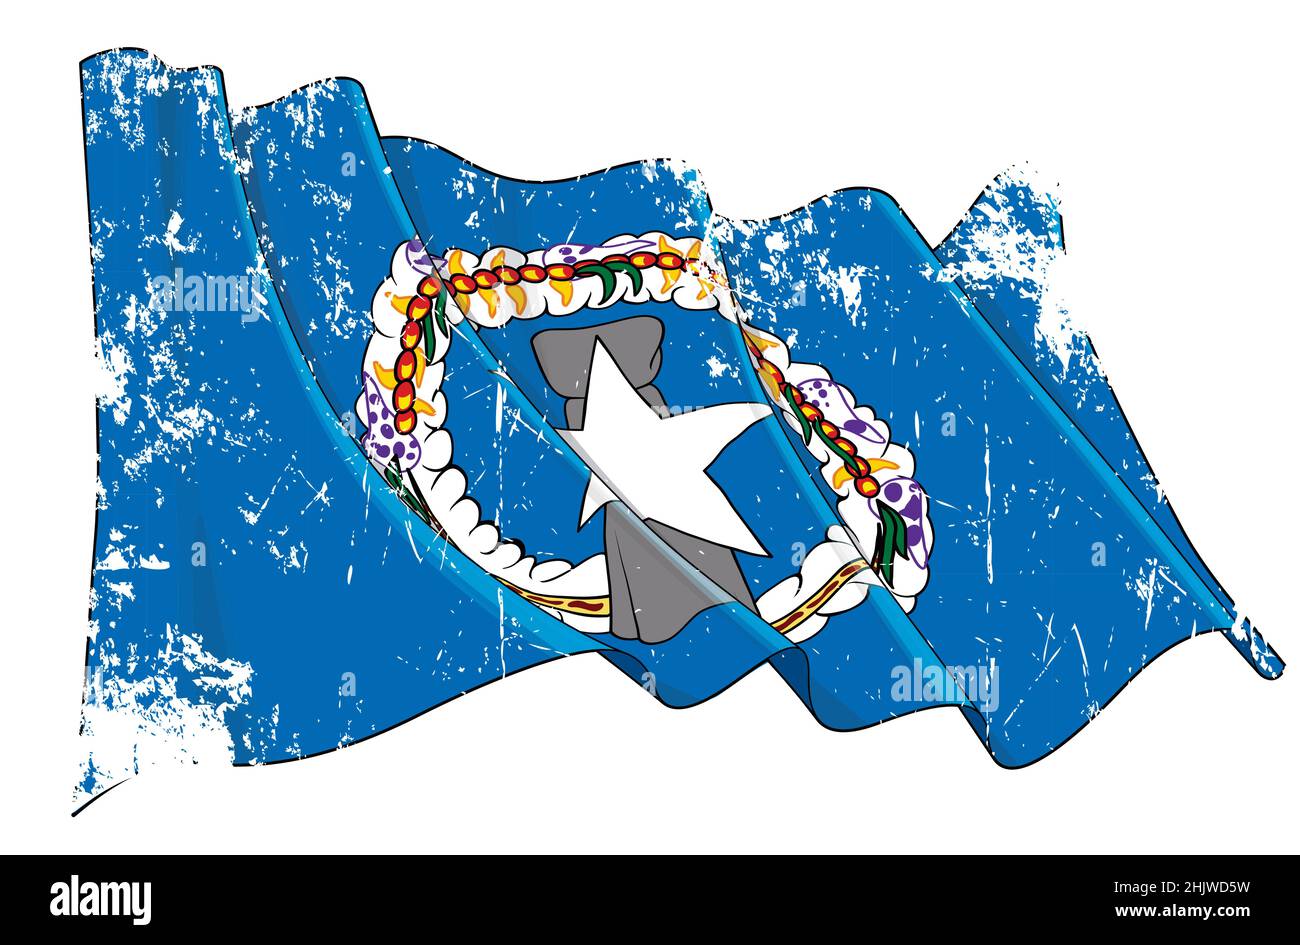 Vecteur Grunge texturé illustration d'un drapeau de l'agité des îles Mariannes du Nord.Tous les éléments sont soigneusement définis sur des couches et des groupes bien définis. Illustration de Vecteur